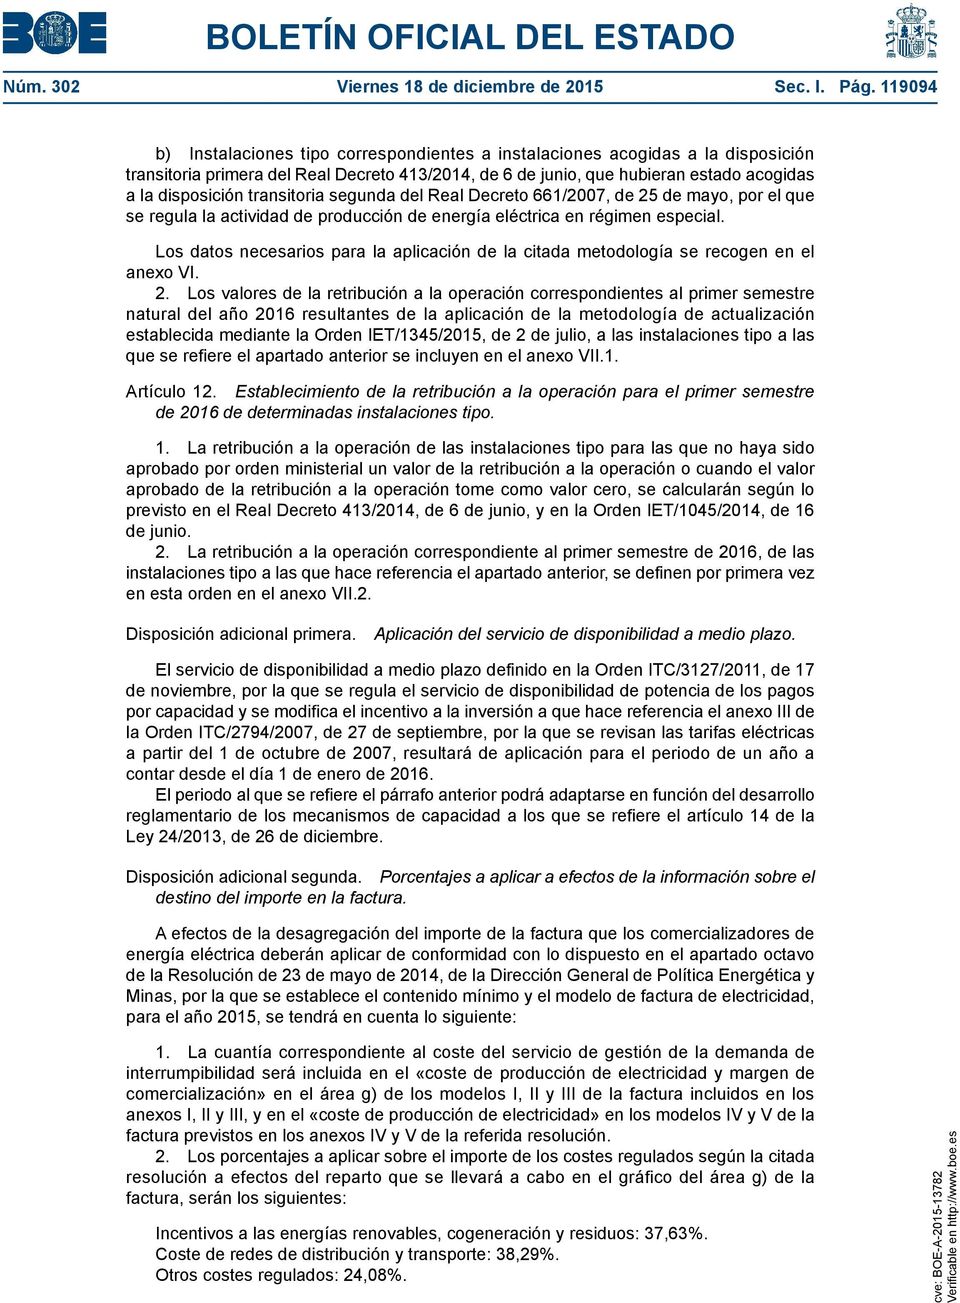 transitoria segunda del Real Decreto 661/2007, de 25 de mayo, por el que se regula la actividad de producción de energía eléctrica en régimen especial.